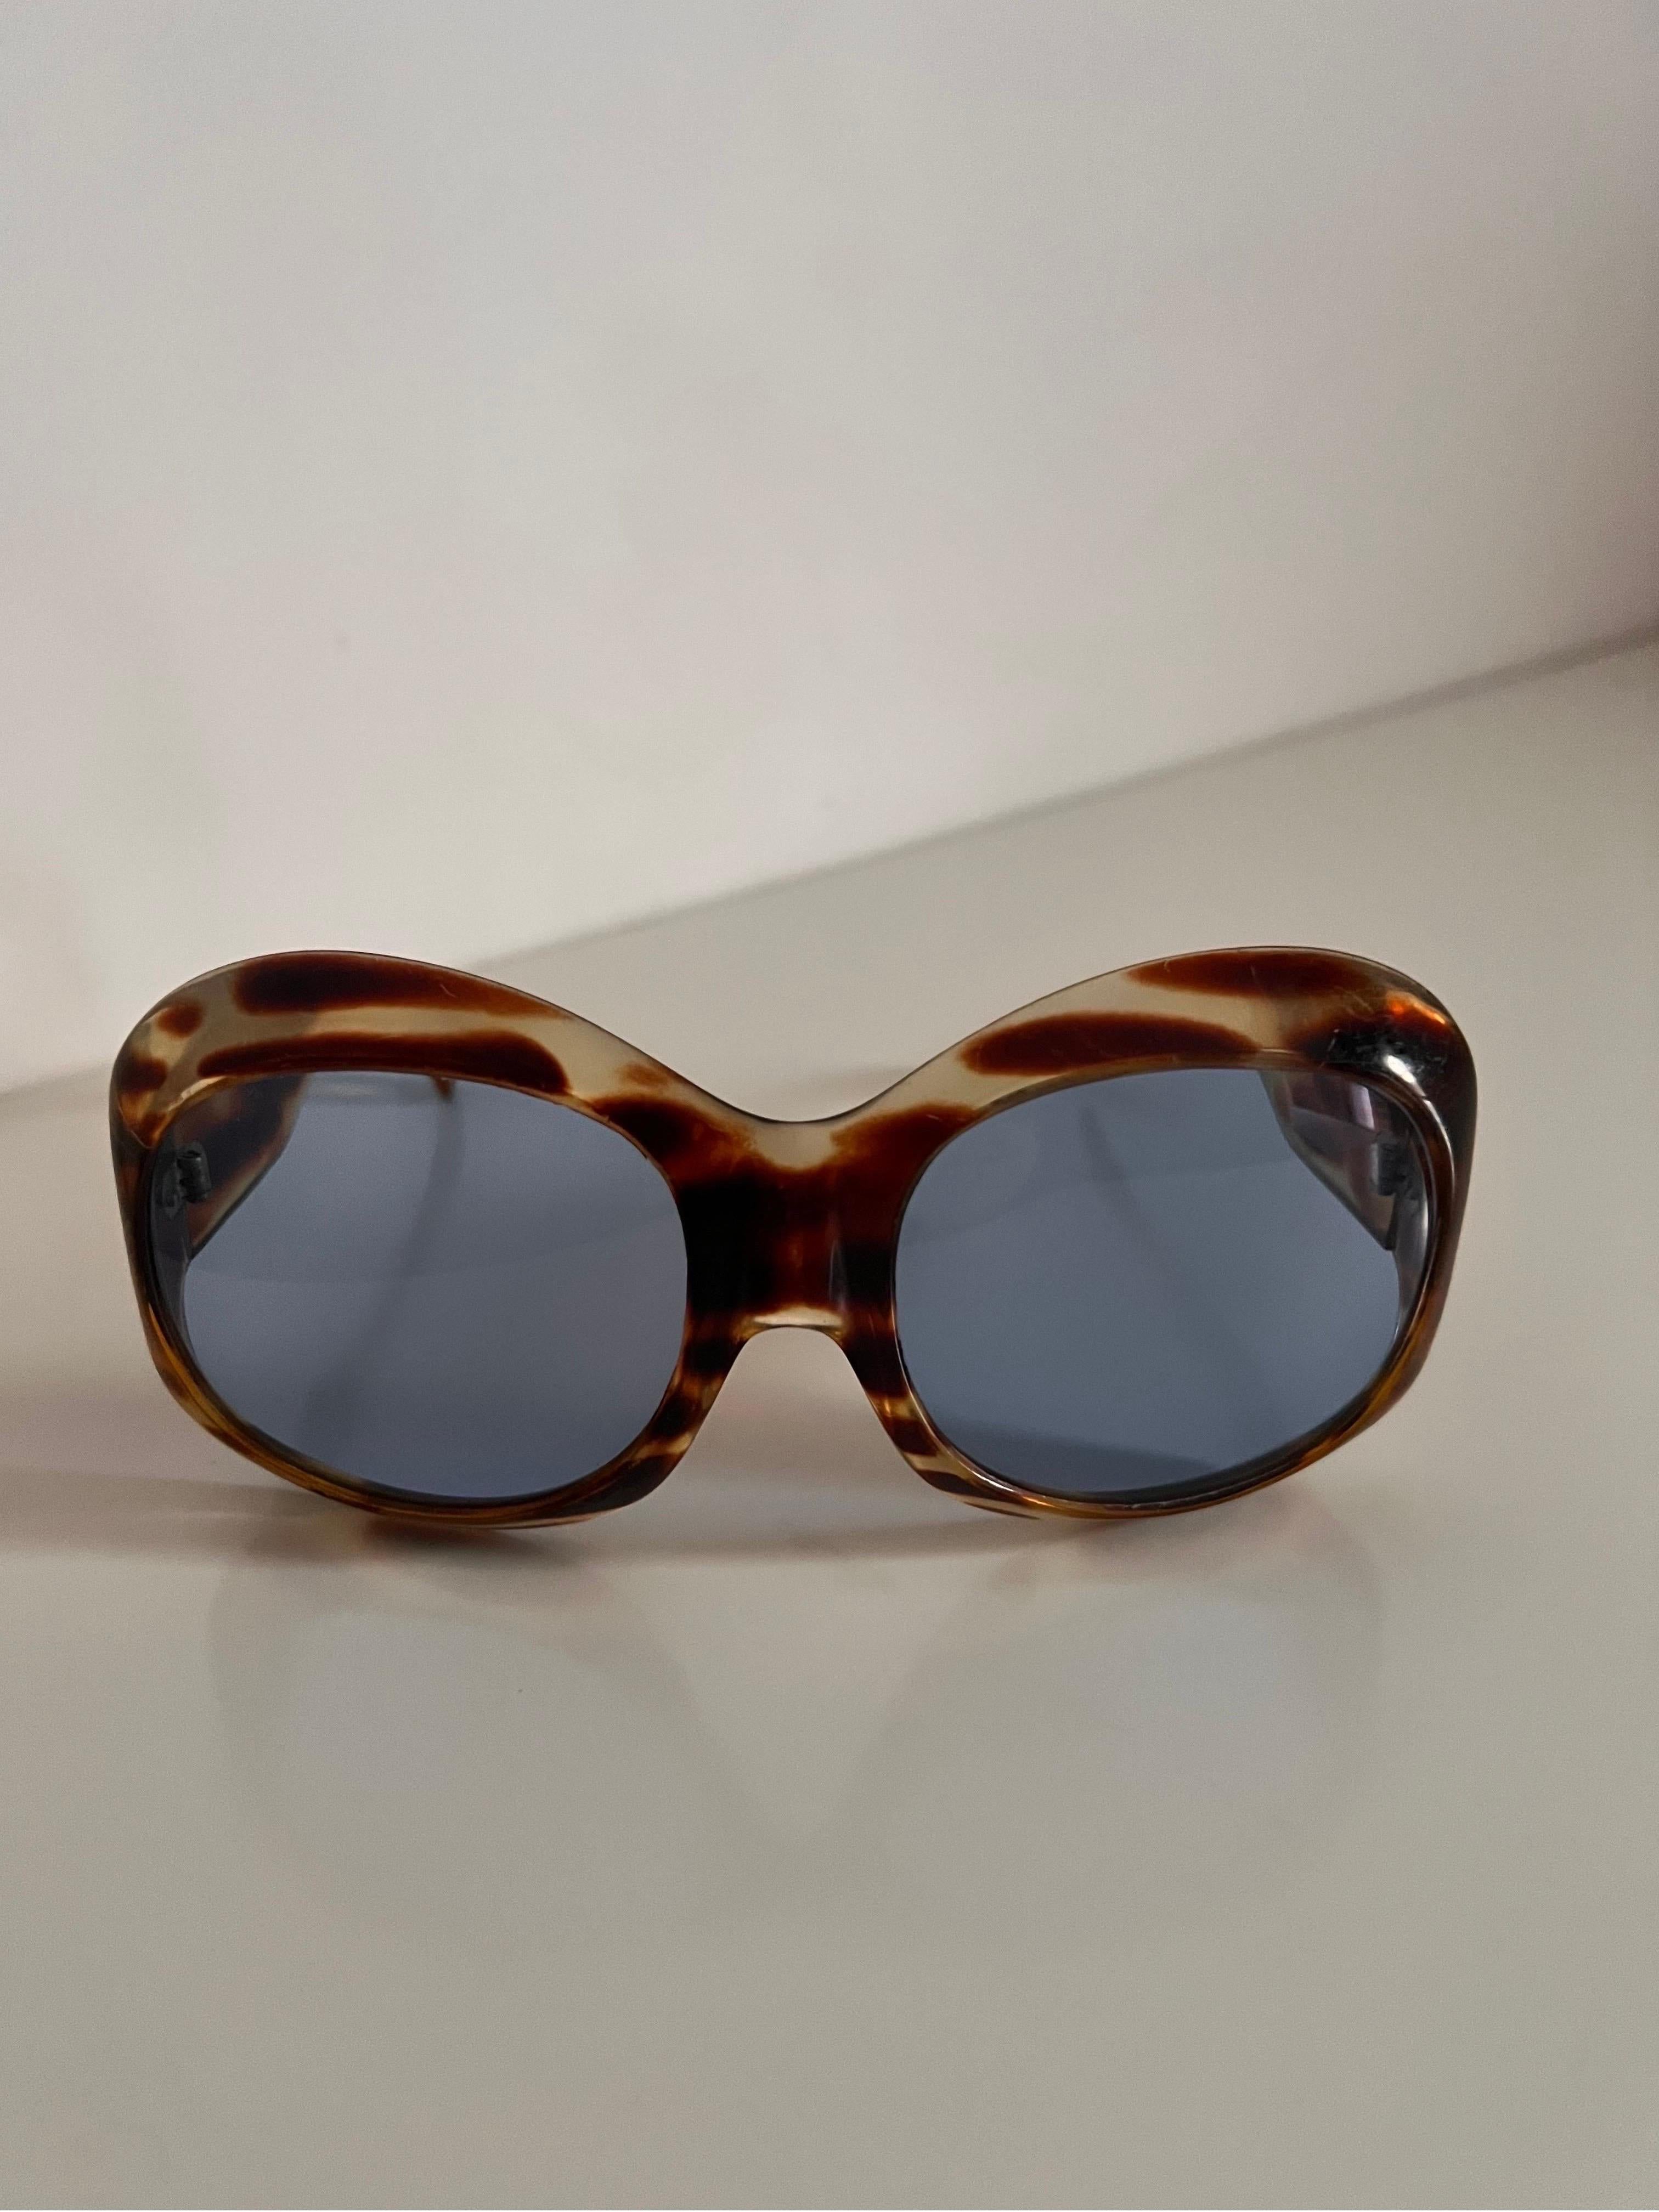 Women's or Men's Vintage 1970’s Italian faux tortoiseshell oversized sunglasses with blue lenses